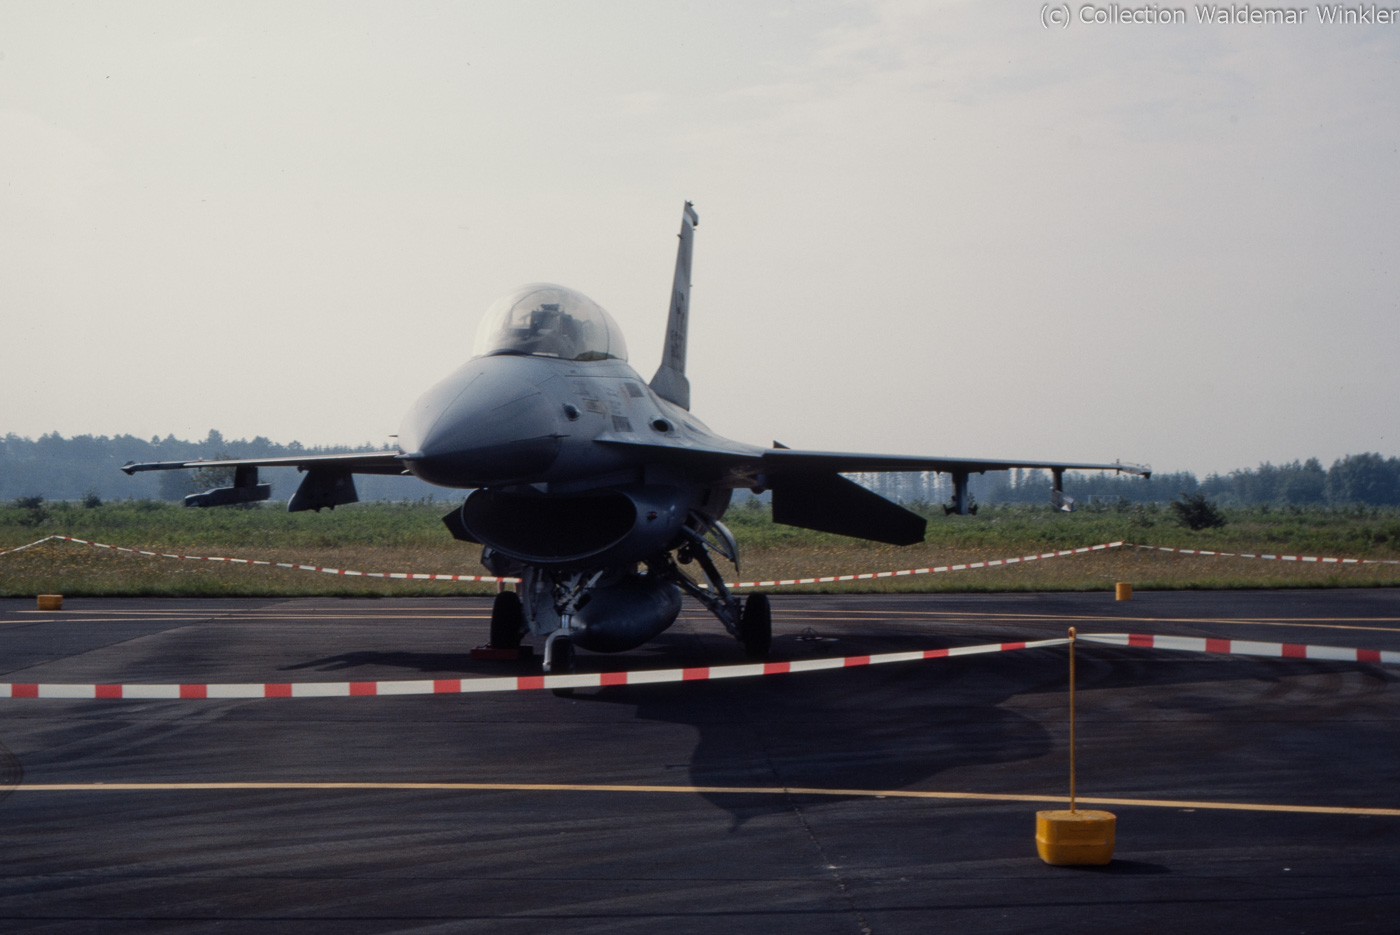 F-16B_Fighting_Falcon_DSC_3164.jpg